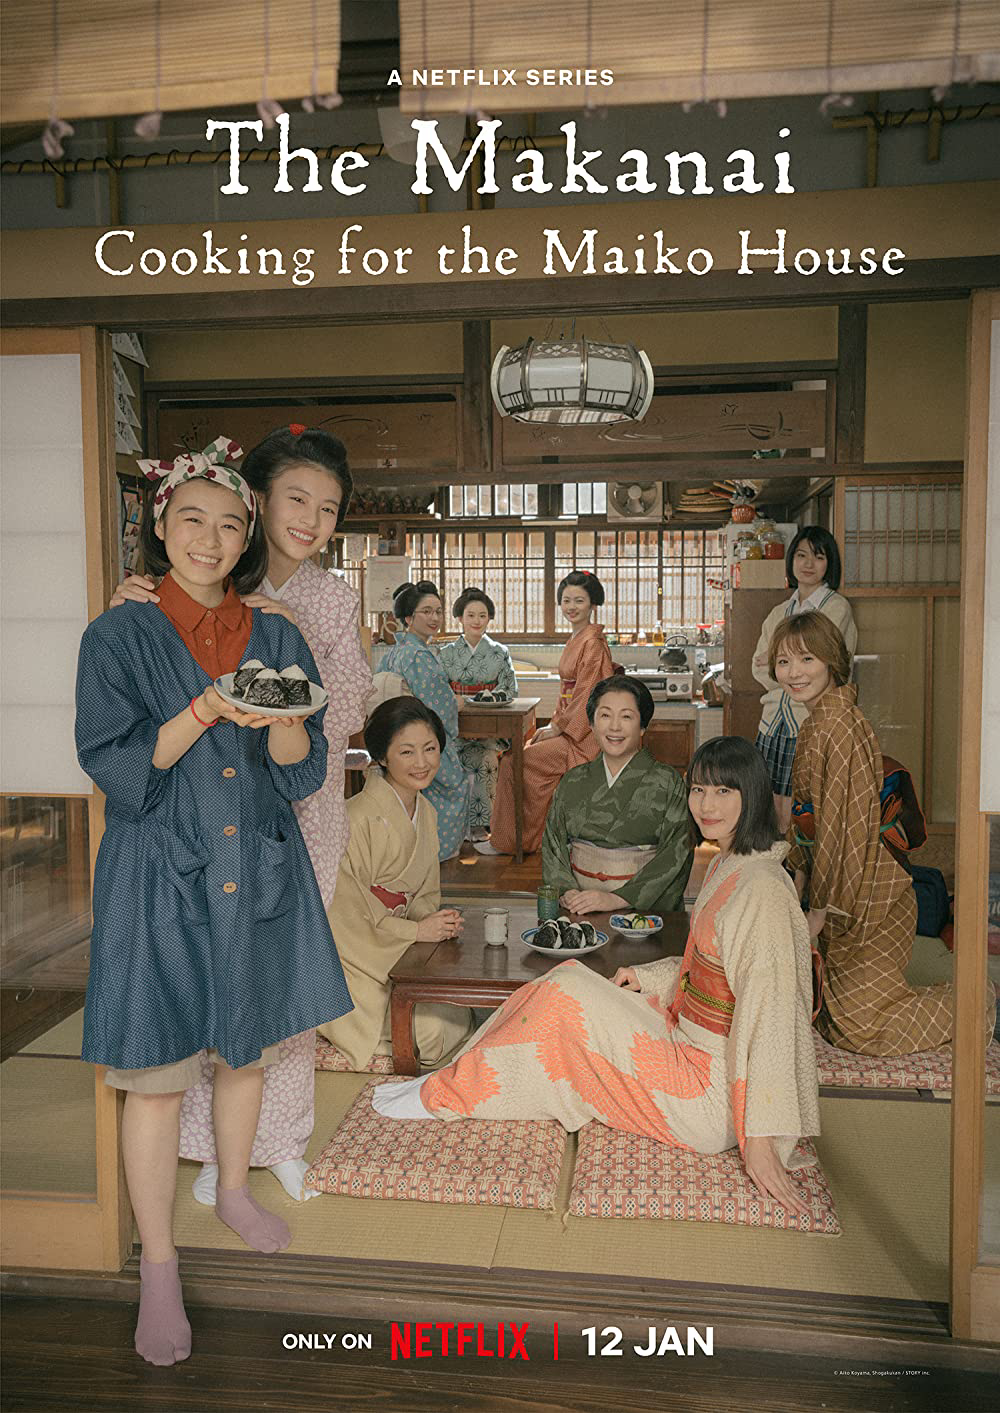 Xem Phim Makanai: Đầu bếp nhà maiko (The Makanai: Cooking for the Maiko House)